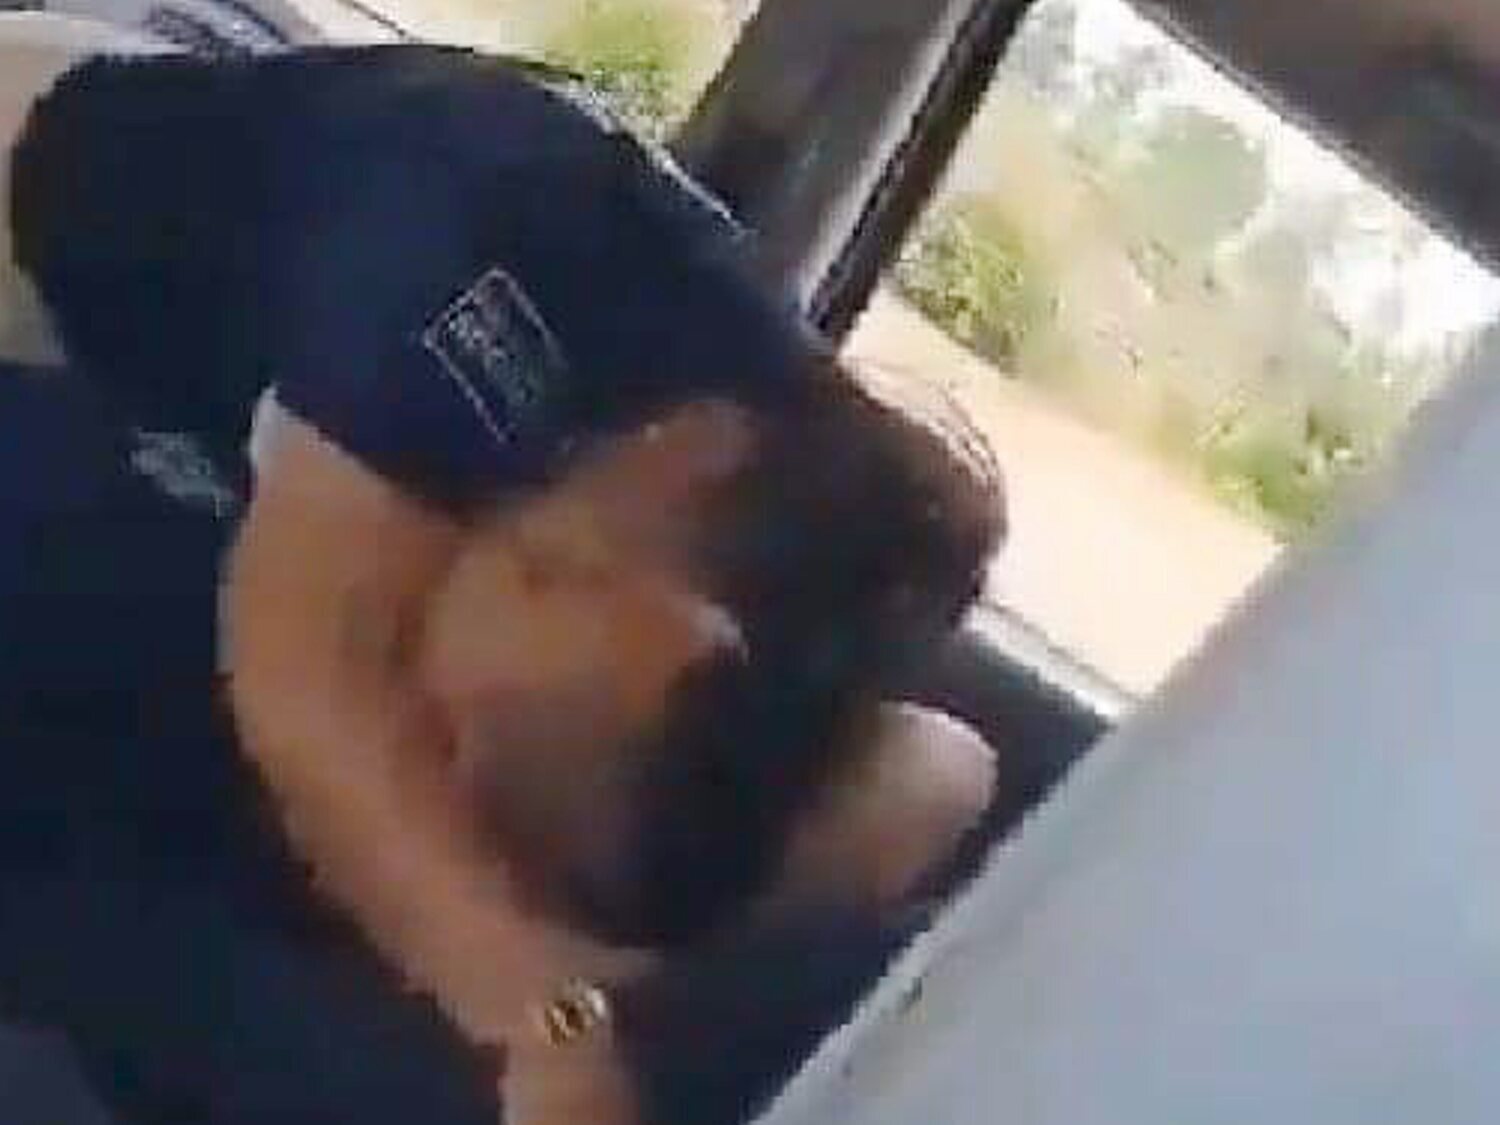 Graban a dos policías de servicio teniendo relaciones sexuales en pleno coche patrulla